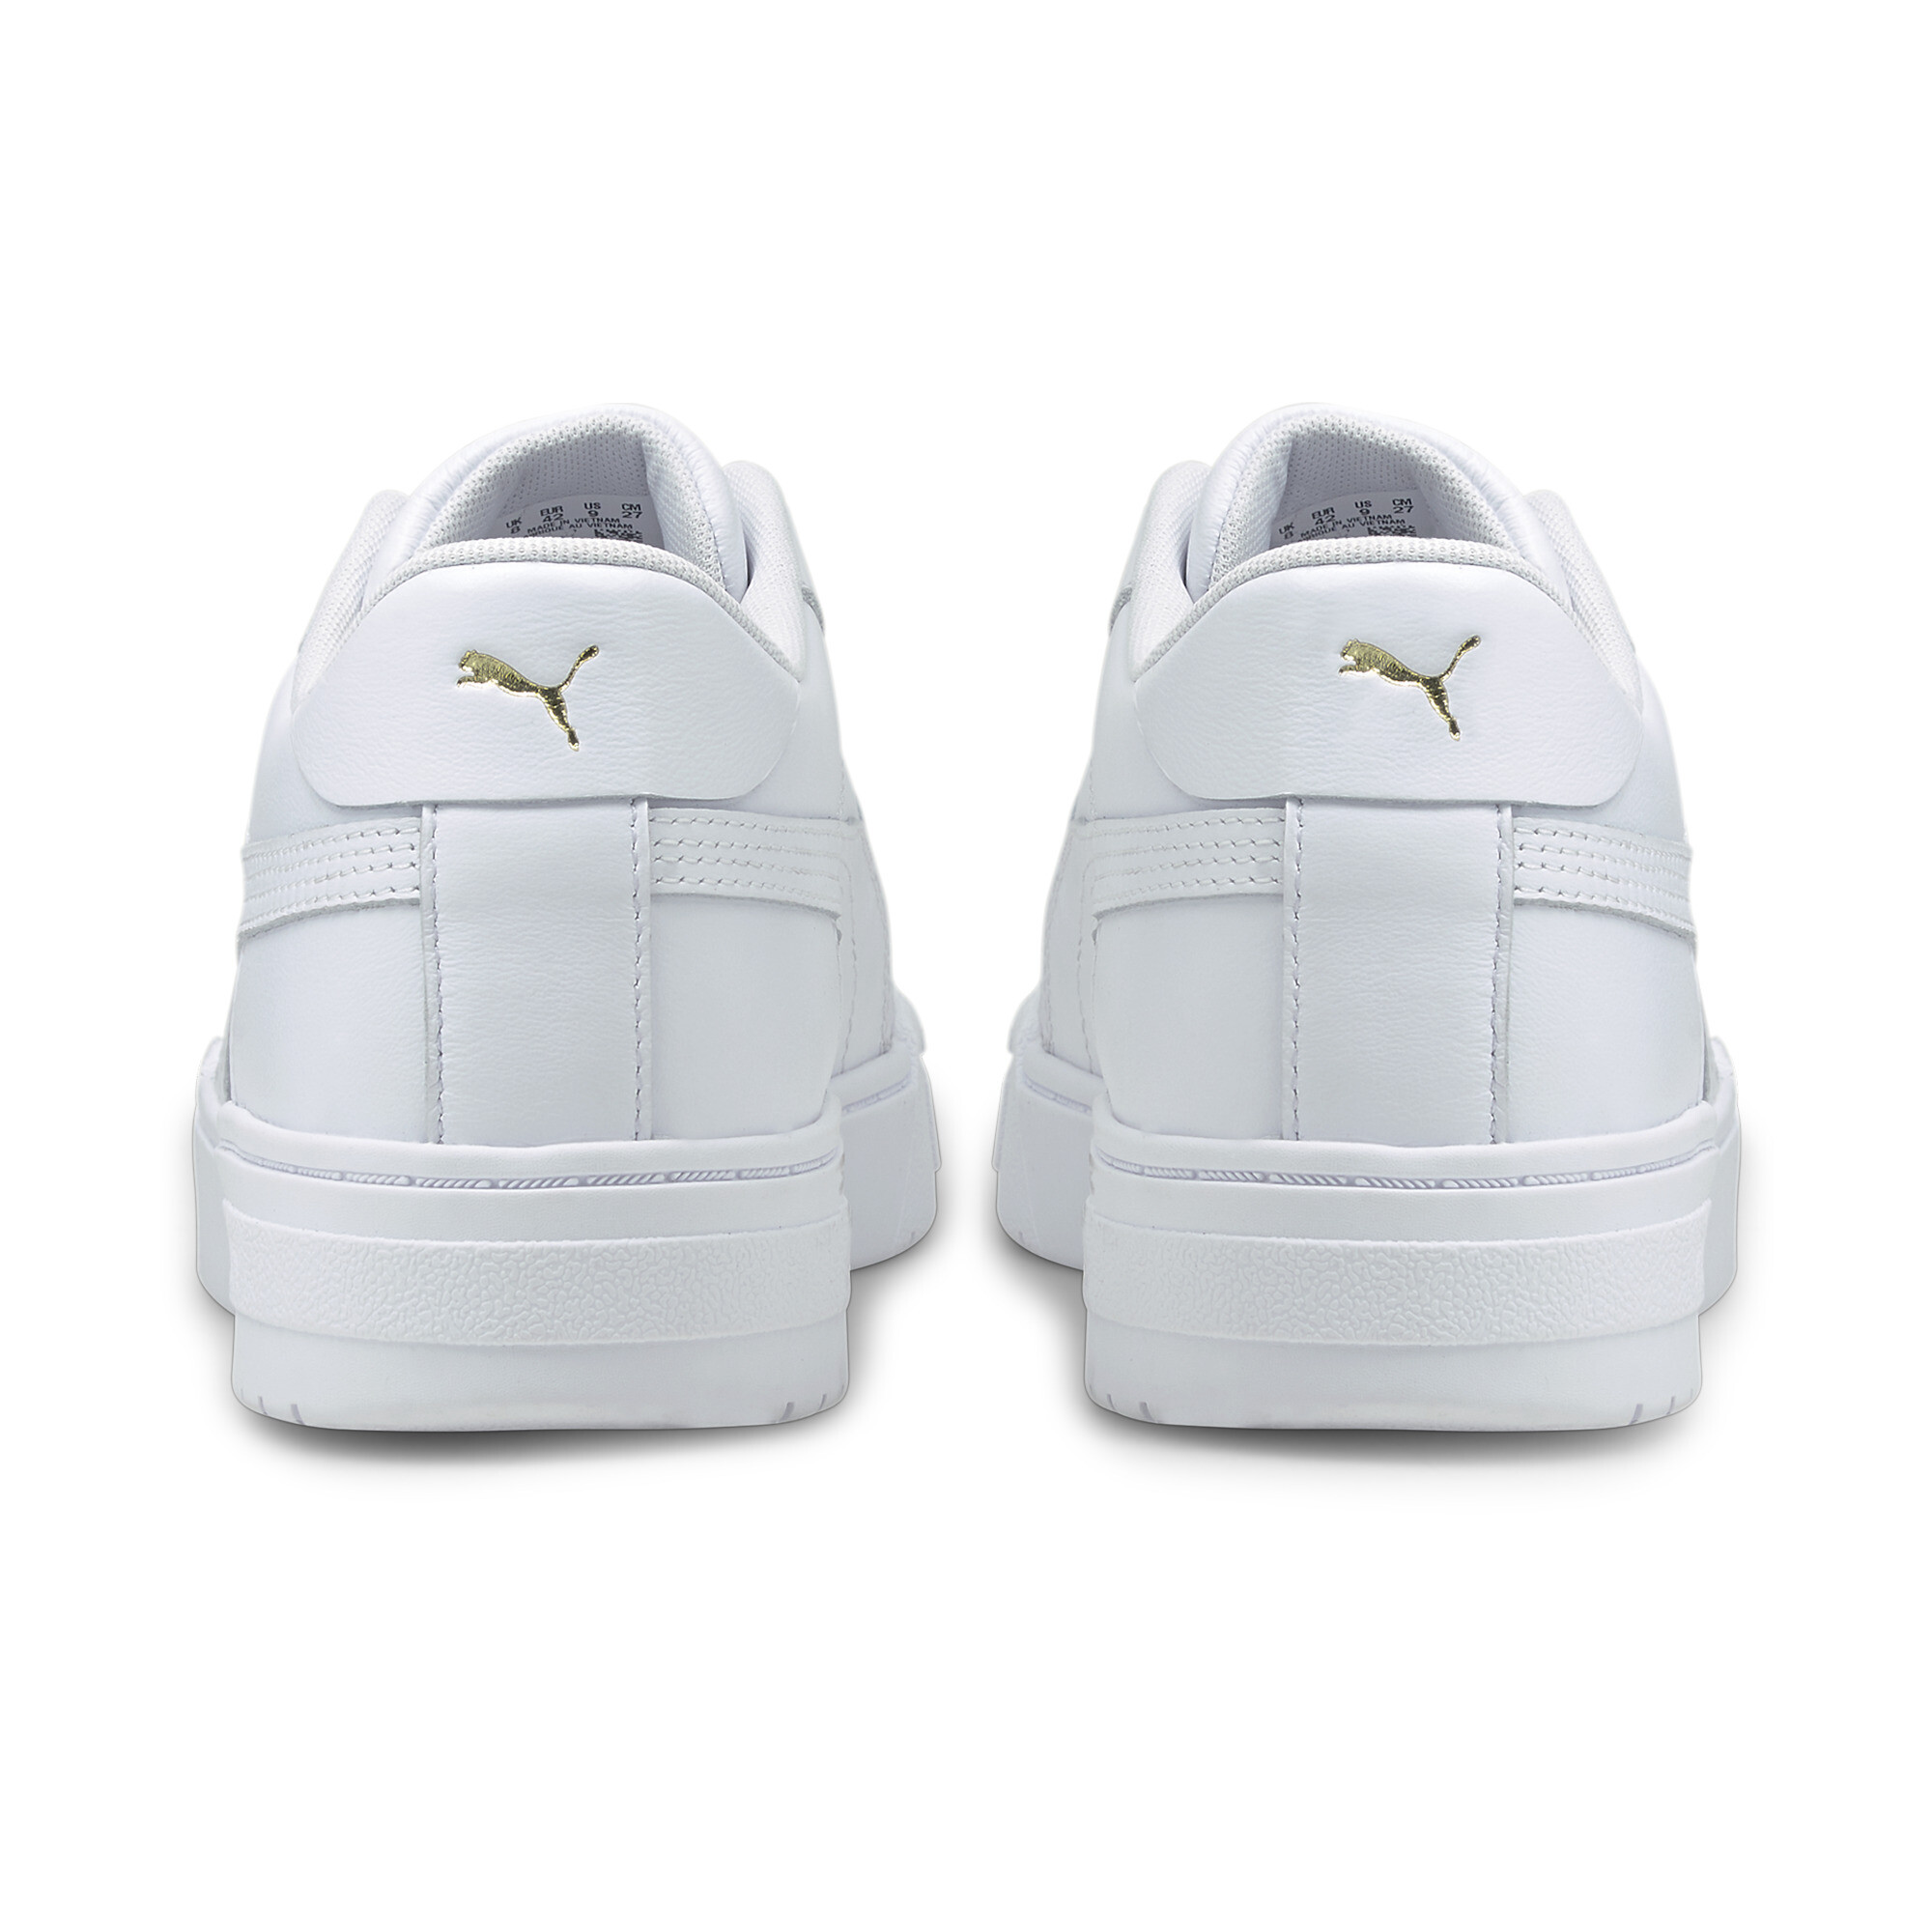 Men's PUMA CA Pro Classic Trainers Shoes In White, Size EU 40